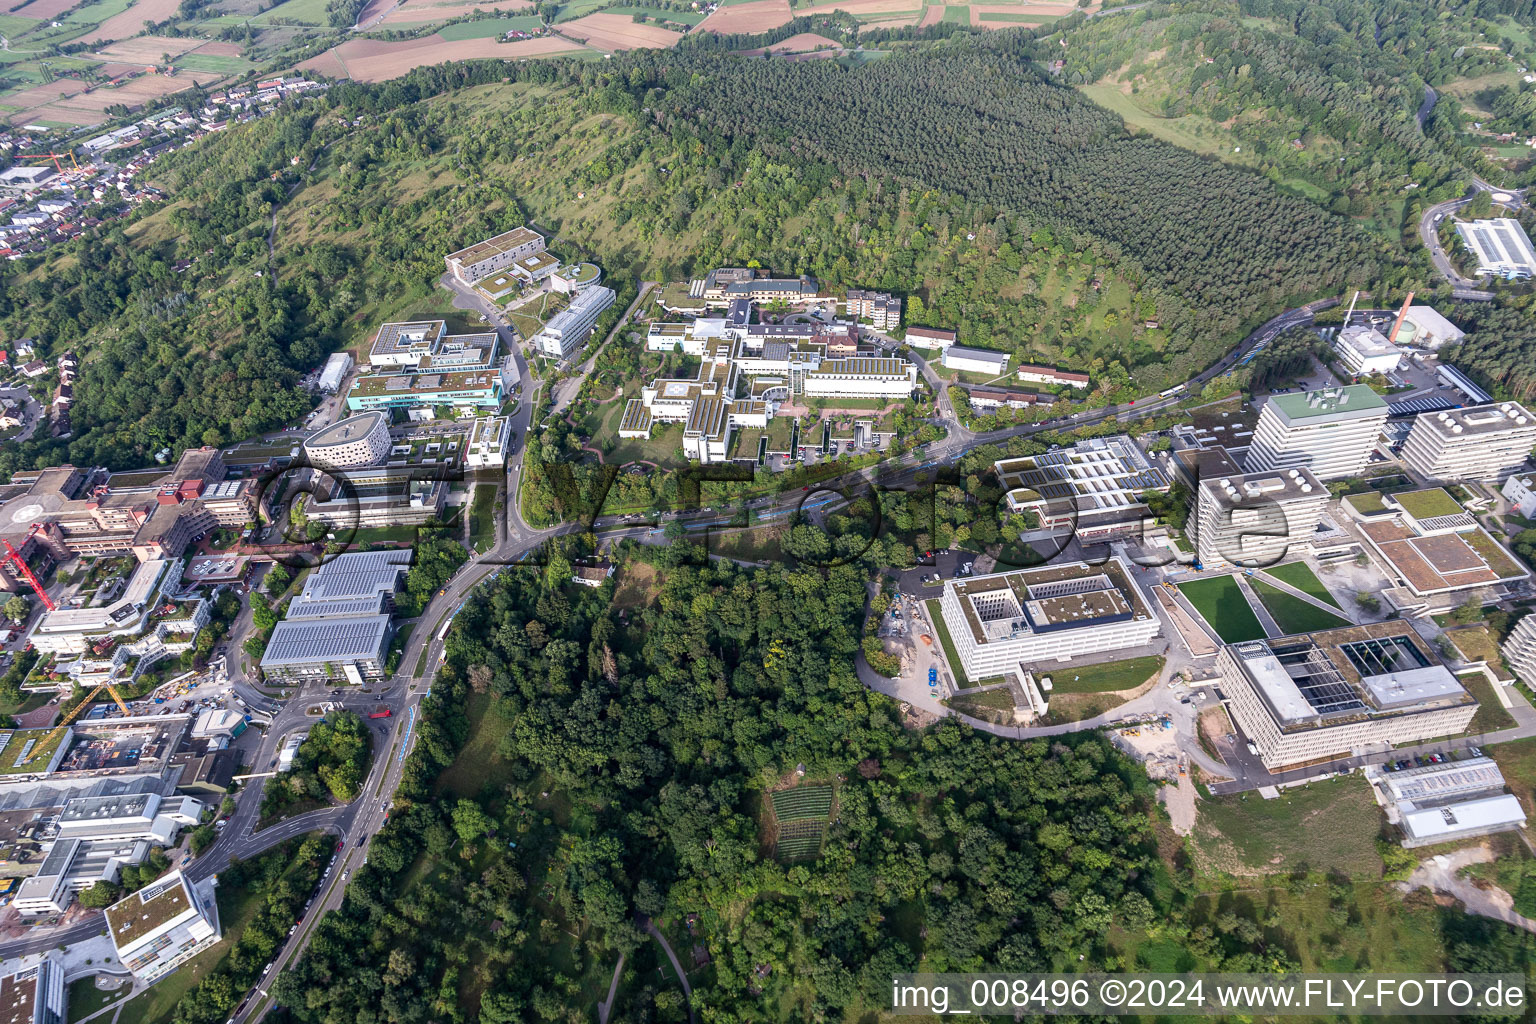 Vue aérienne de Terrain de la clinique universitaire et campus de l'université à Tübingen dans le département Bade-Wurtemberg, Allemagne